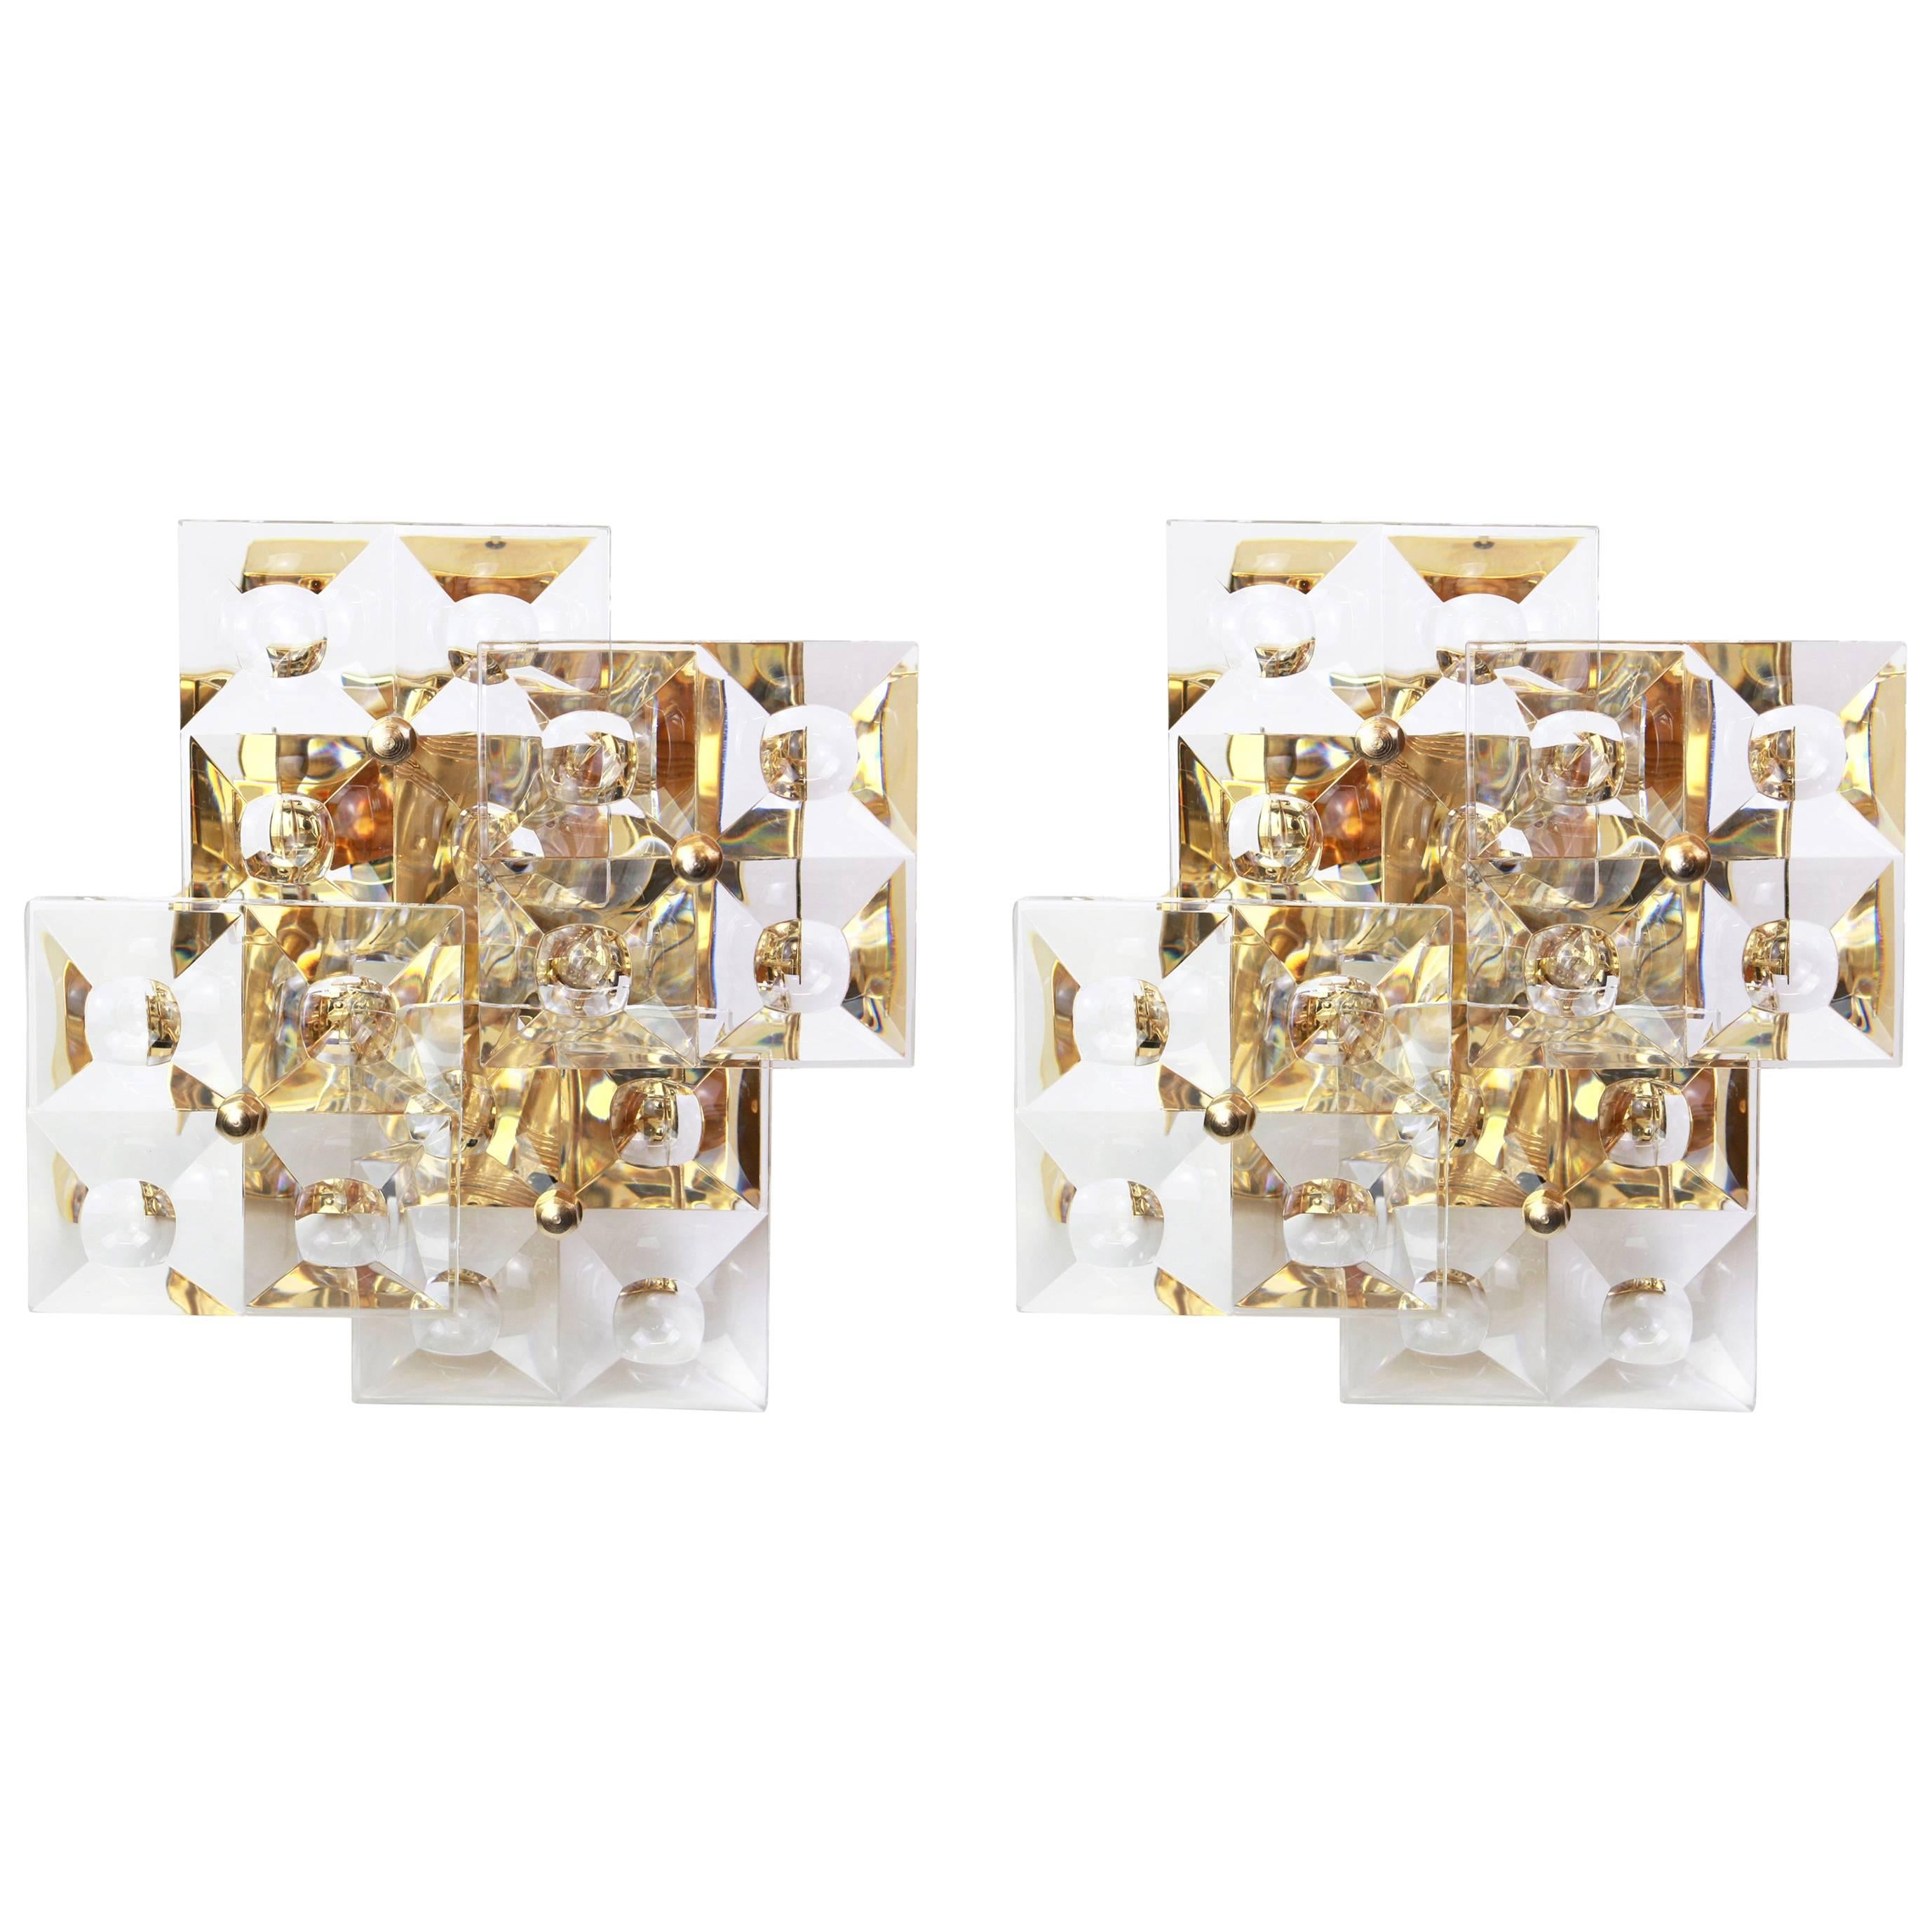 Ein wunderschöner goldener Wandleuchter mit Kristallgläsern, hergestellt von Kinkeldey, Deutschland, ca. 1970-1979. Es besteht aus Kristallglasstücken auf einem vergoldeten Messingrahmen.
Aus der Serie: Imperial (siehe letztes Bild)

Das Beste